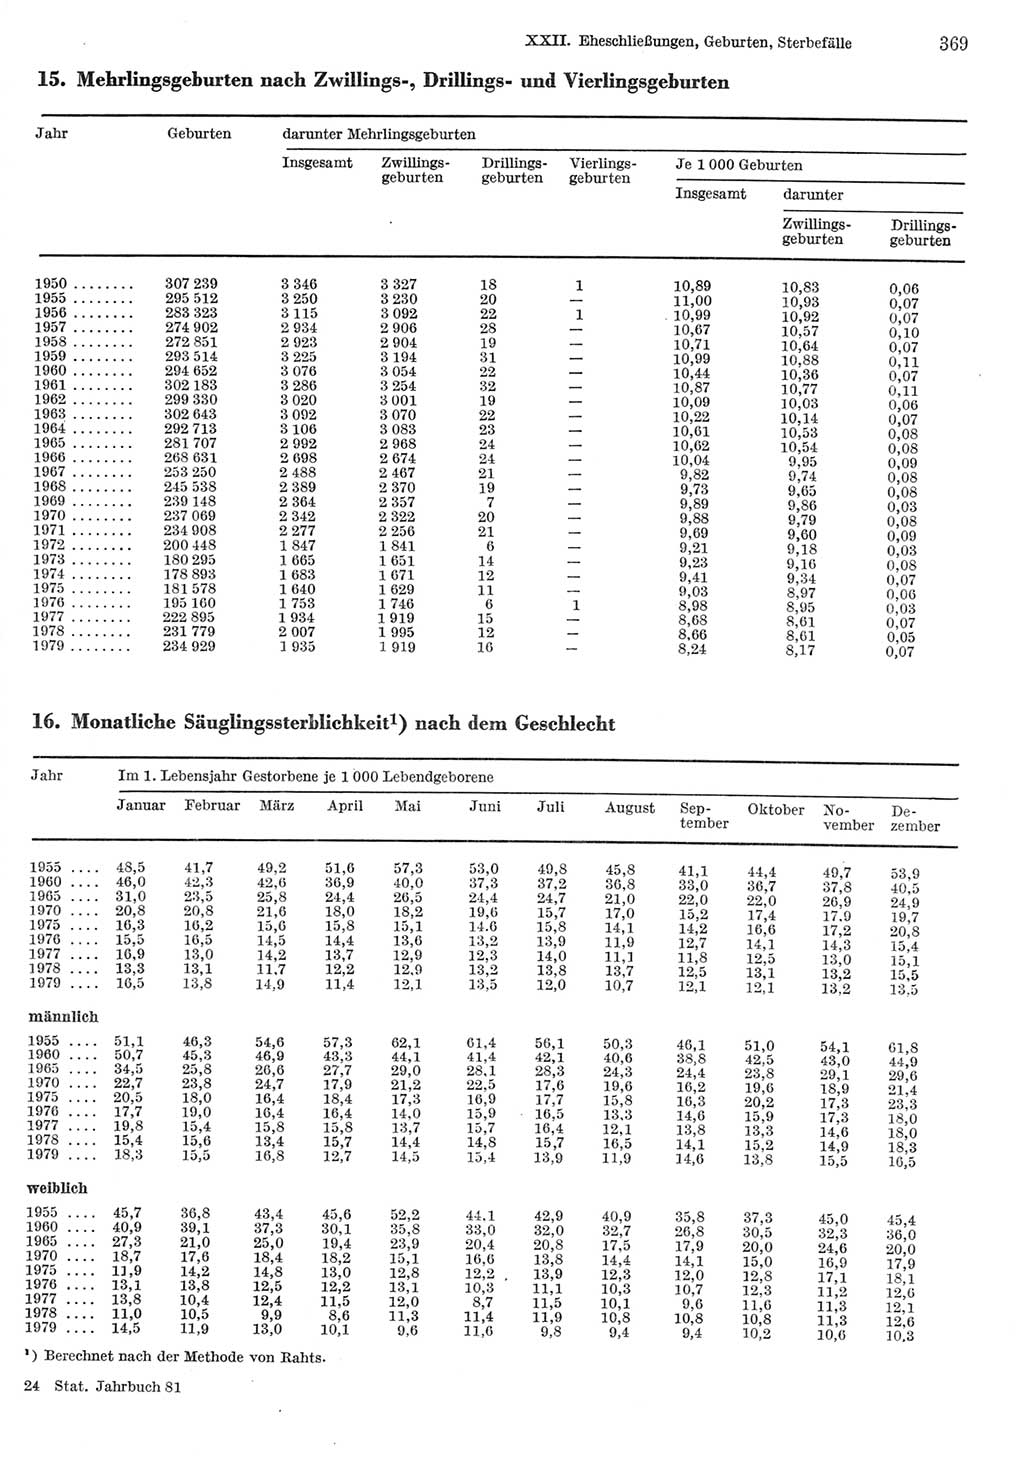 Statistisches Jahrbuch der Deutschen Demokratischen Republik (DDR) 1981, Seite 369 (Stat. Jb. DDR 1981, S. 369)